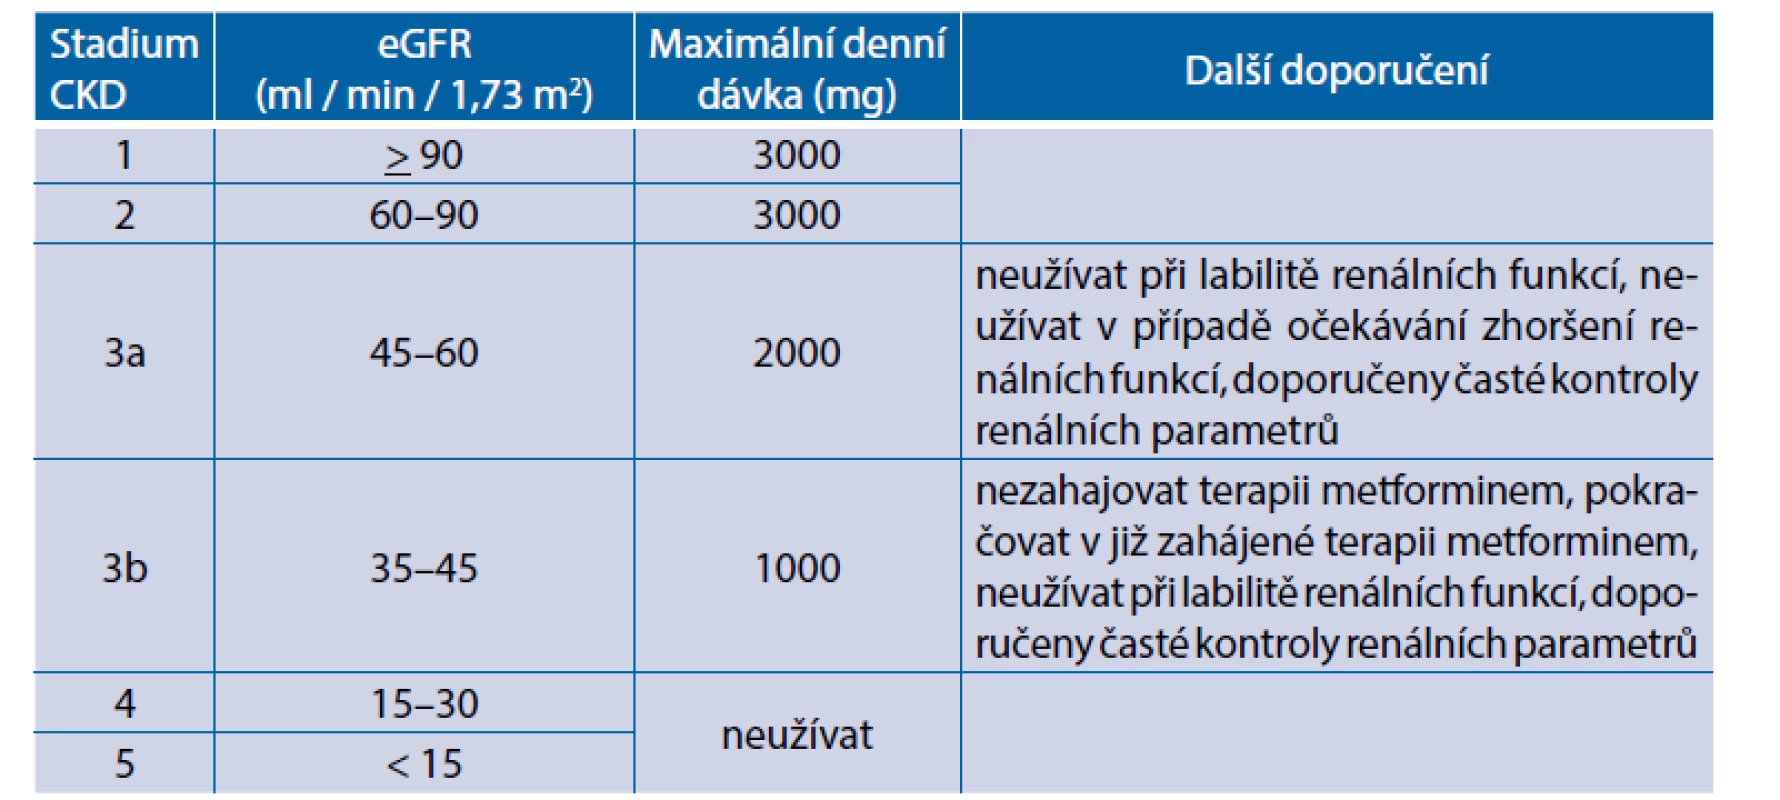 Doporučení redukce dávky metforminu s ohledem na funkce ledvin (dle EMA, 2016)(2)